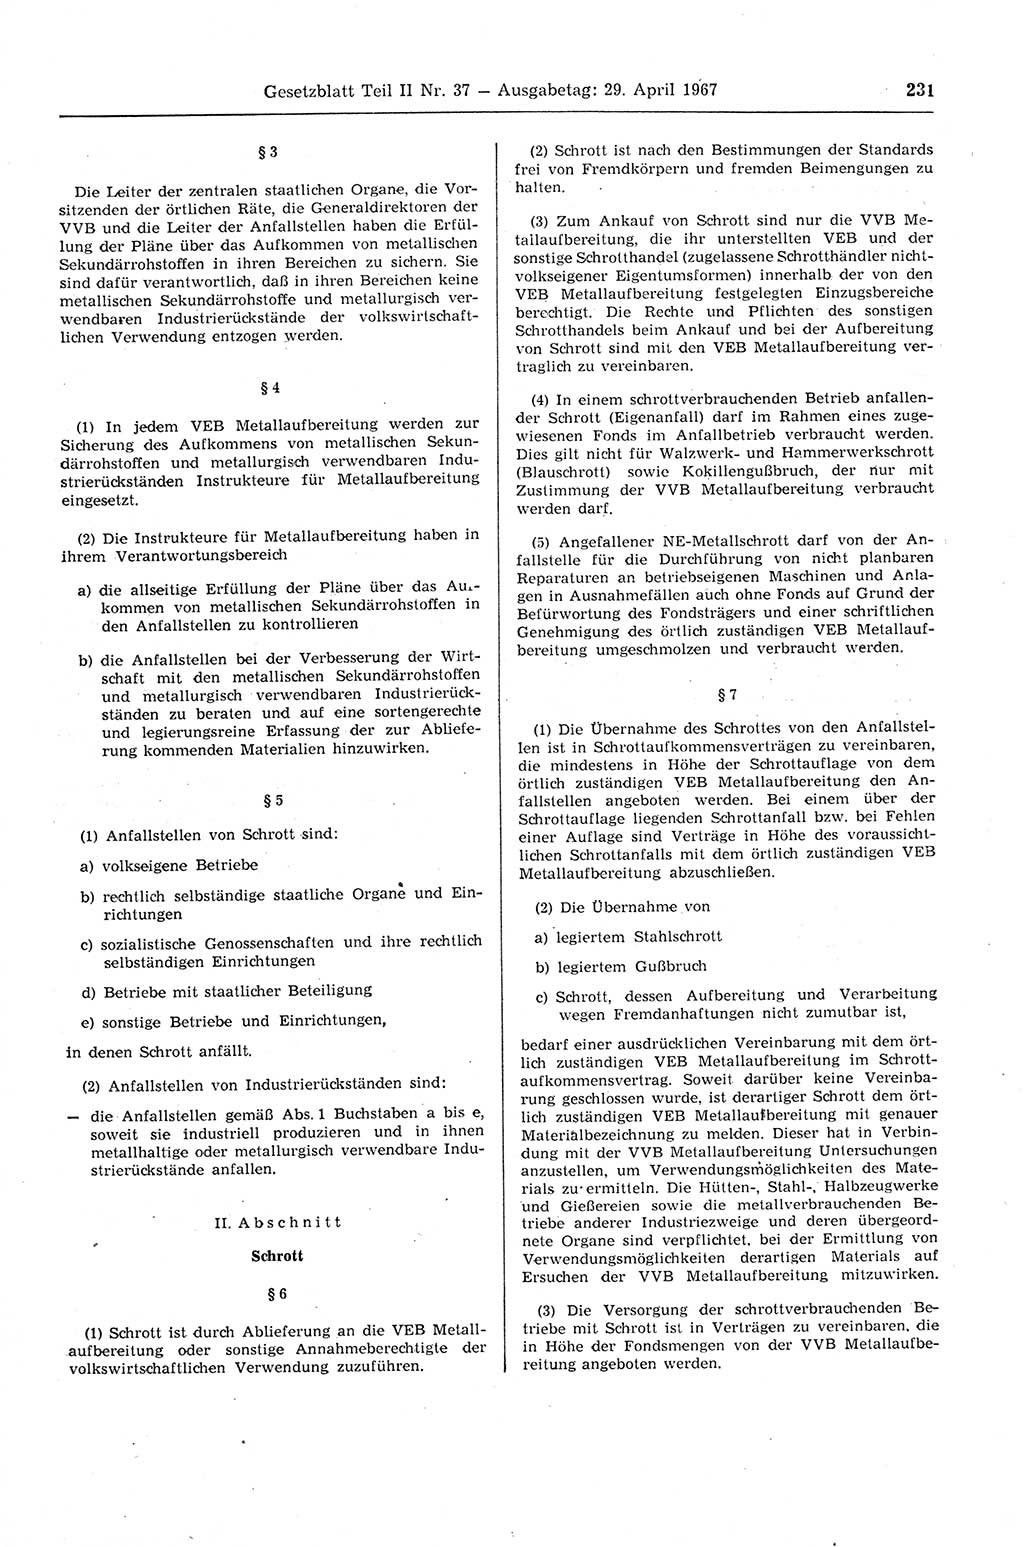 Gesetzblatt (GBl.) der Deutschen Demokratischen Republik (DDR) Teil ⅠⅠ 1967, Seite 231 (GBl. DDR ⅠⅠ 1967, S. 231)